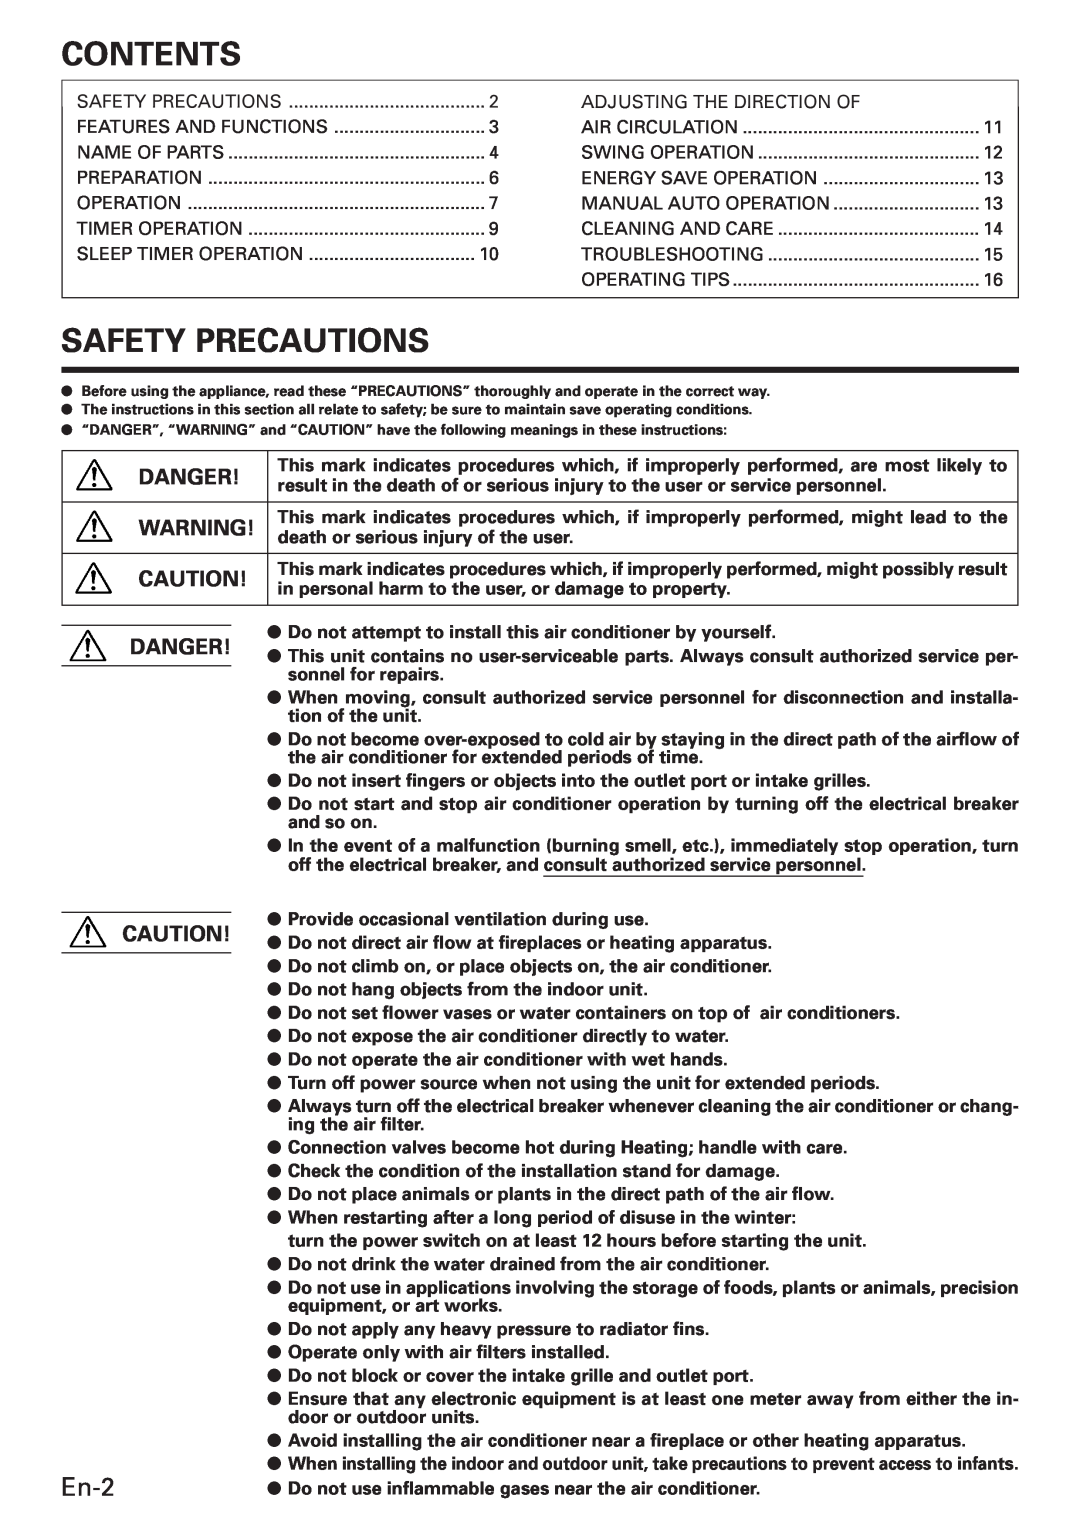 Fujitsu ABU30, Air Conditioner Ceiling Suspension Type manual Contents, Safety Precautions, En-2, Danger 